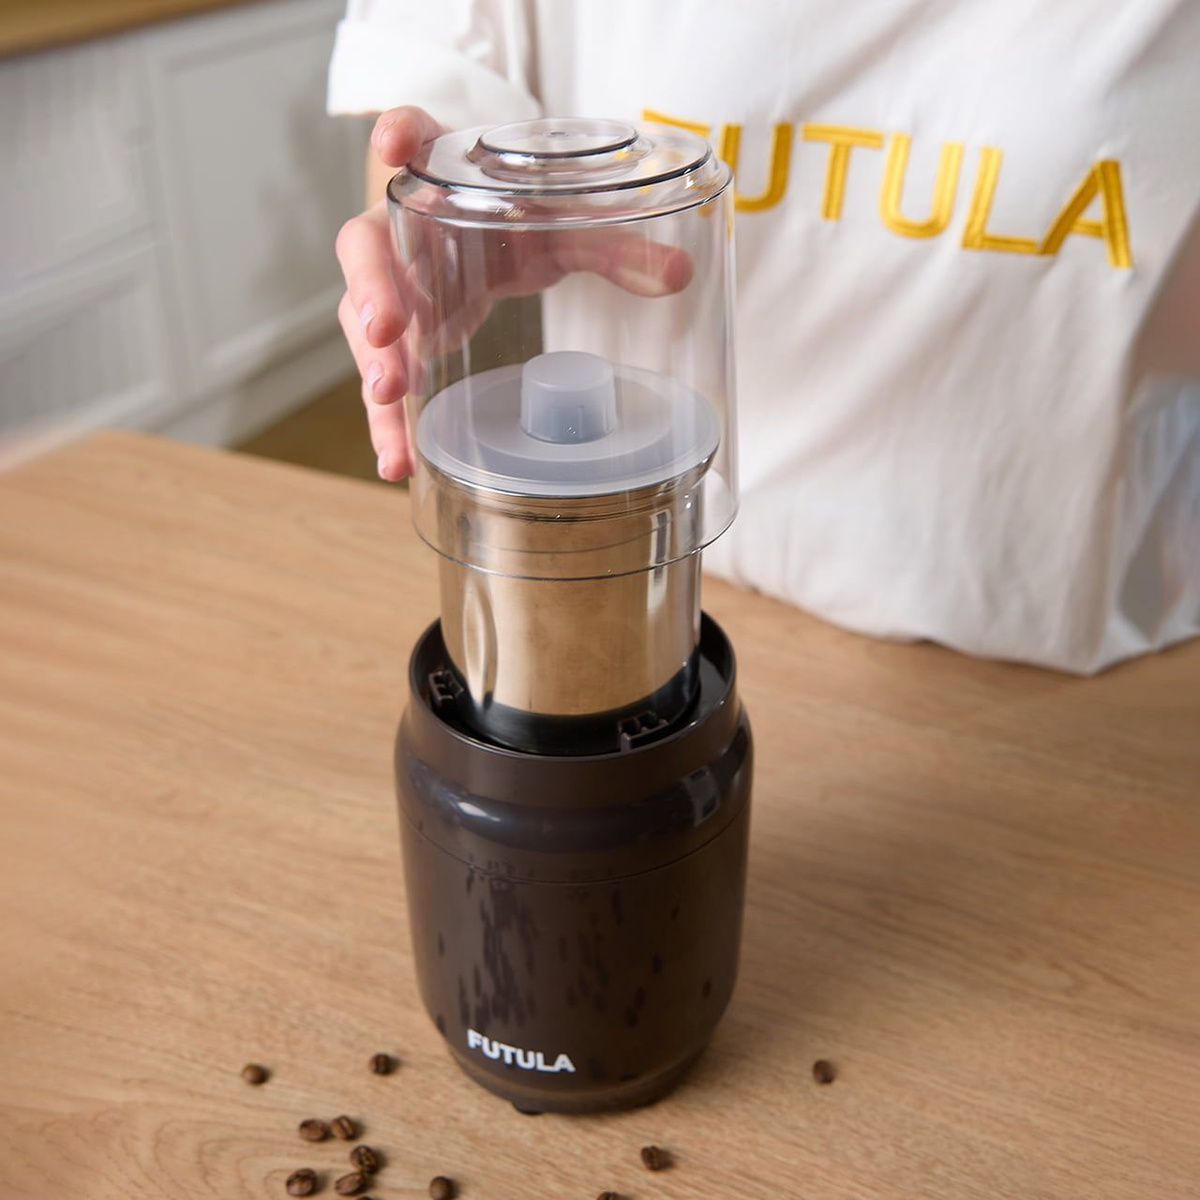 Система защиты, которой оснащена Futula CG8, блокирует включение кофемолки без правильно надетой крышки. Также в данной модели реализована защита от перегрева